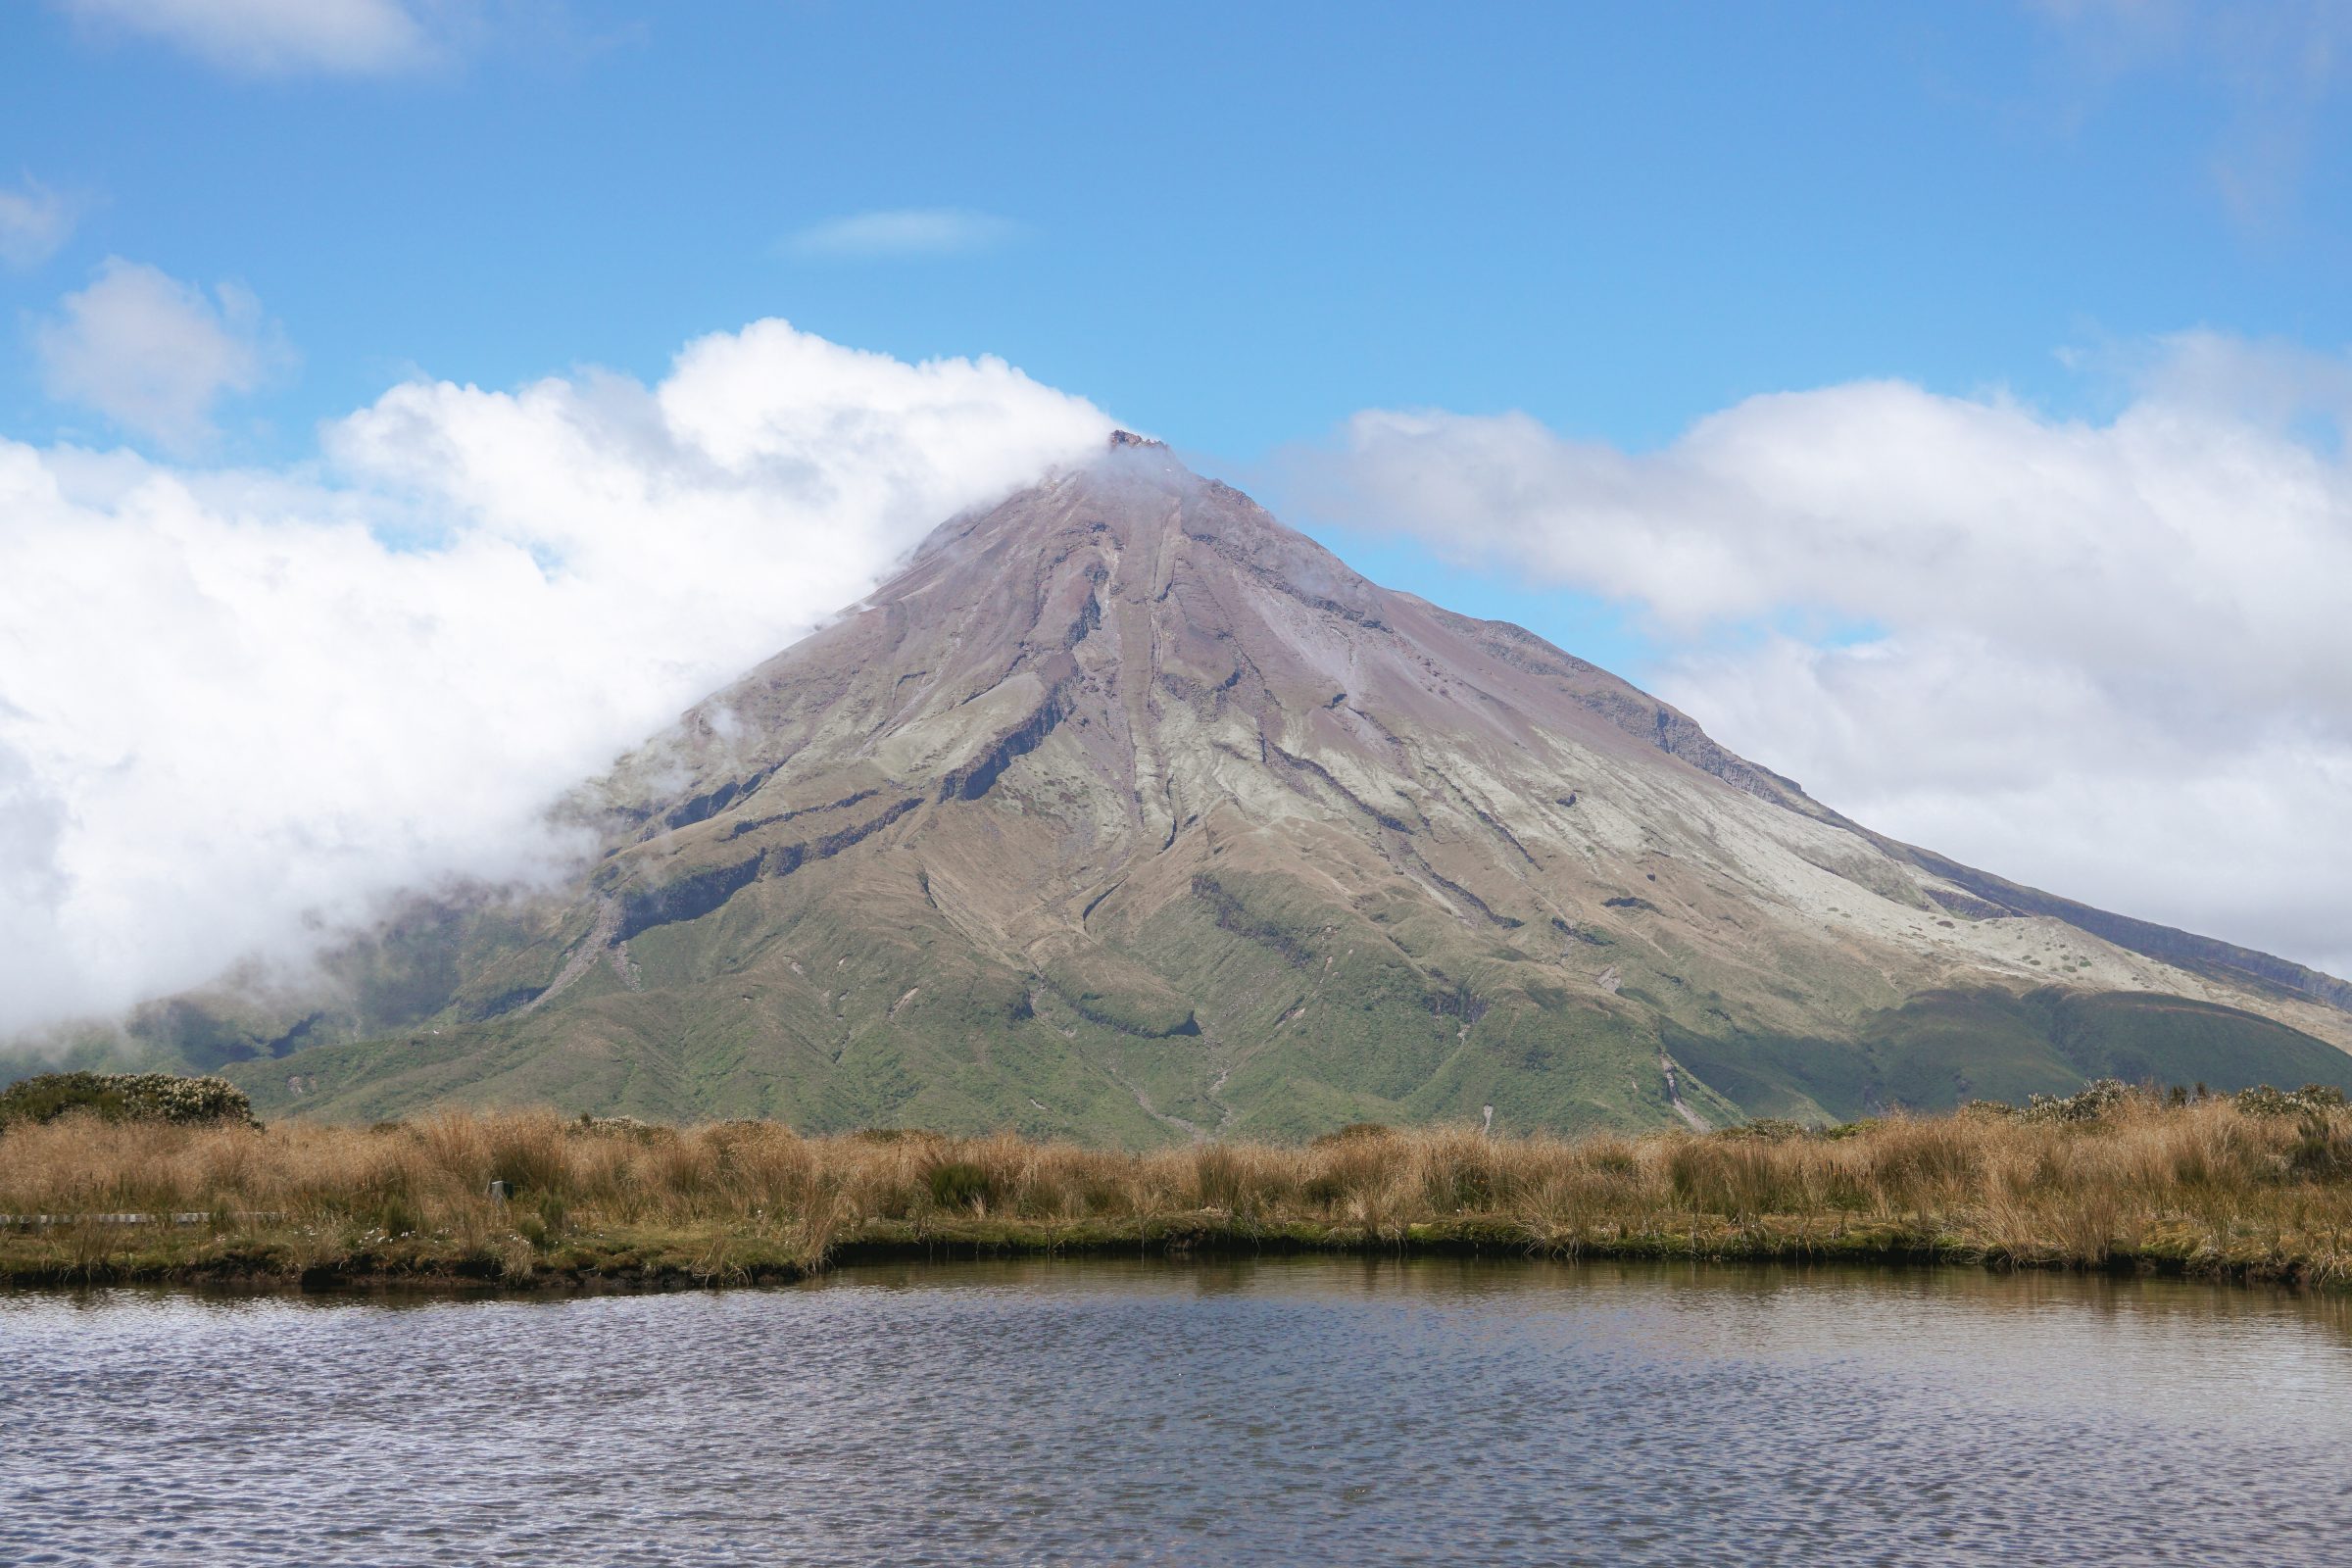 Helaas geen weerspiegeling, maar alsnog prachtig om de vulkaan zo te zien | Hiken Mount Taranaki